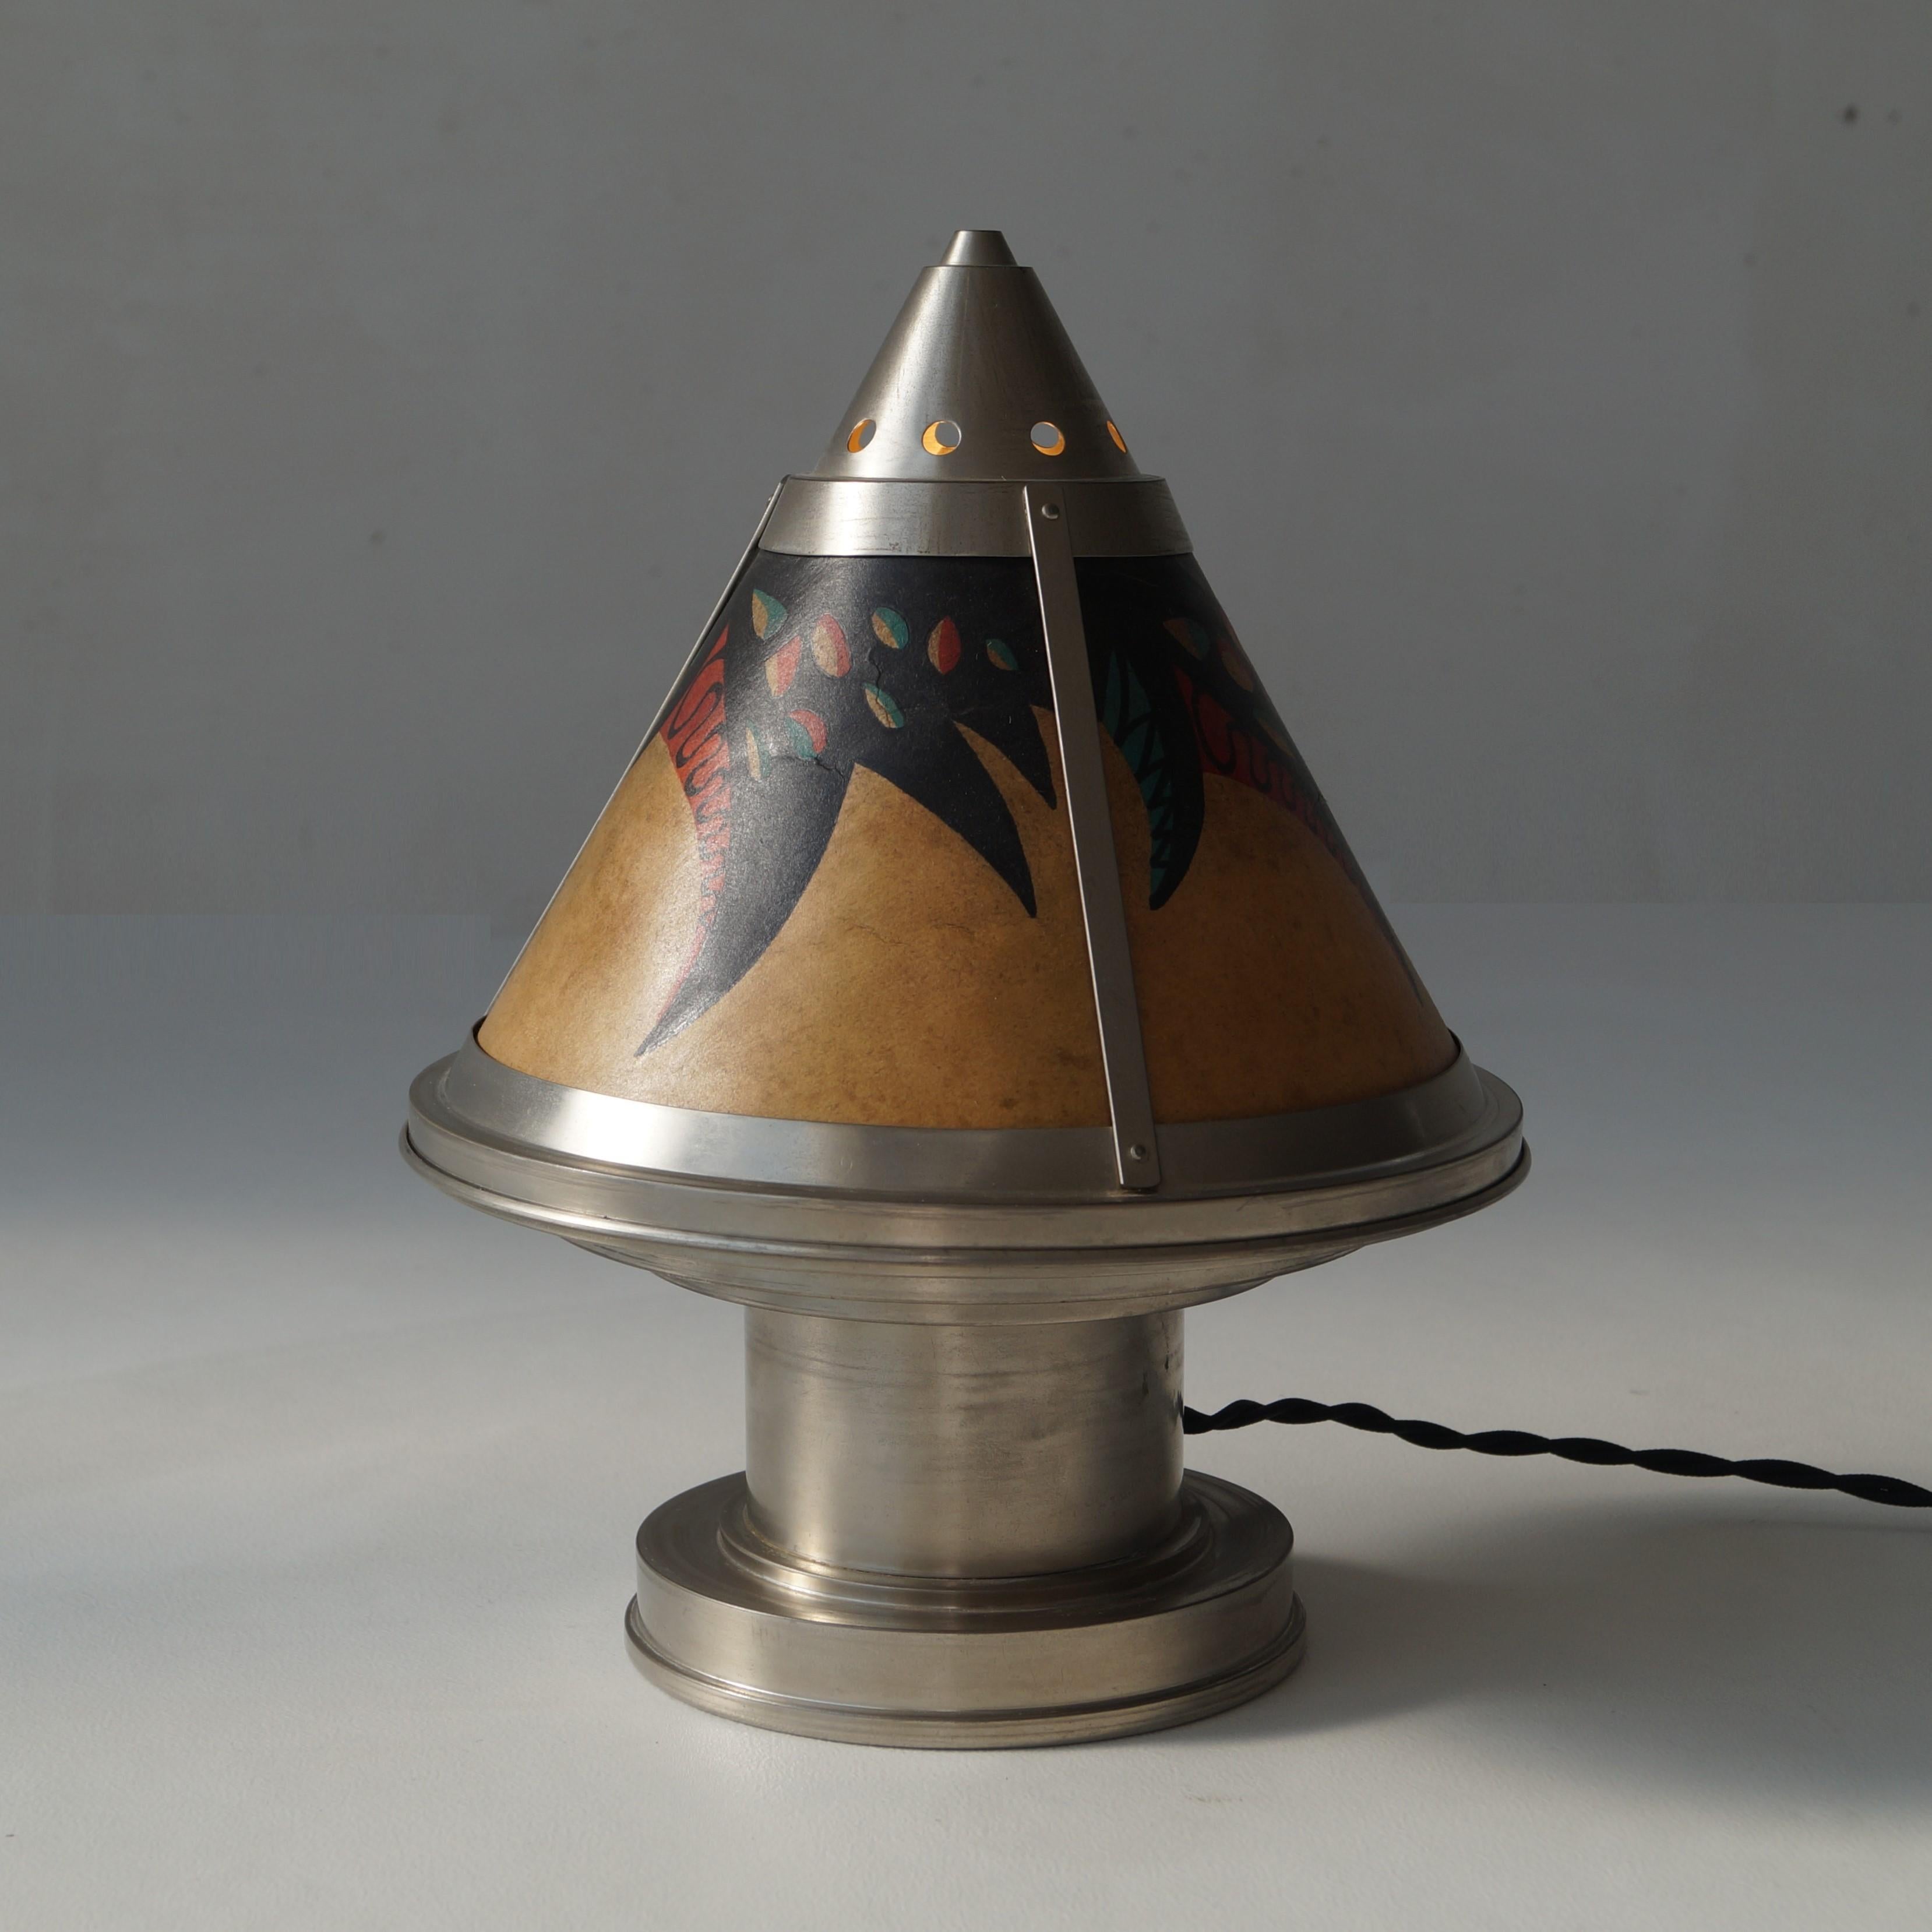 Rare lampe de table ou de chevet de style Art déco hollandais par le fabricant hollandais Daalderop, vers 1925. La pièce est en excellent état par rapport à son âge. Ces lampes étaient produites en laiton et en nickel. Celui-ci est la version